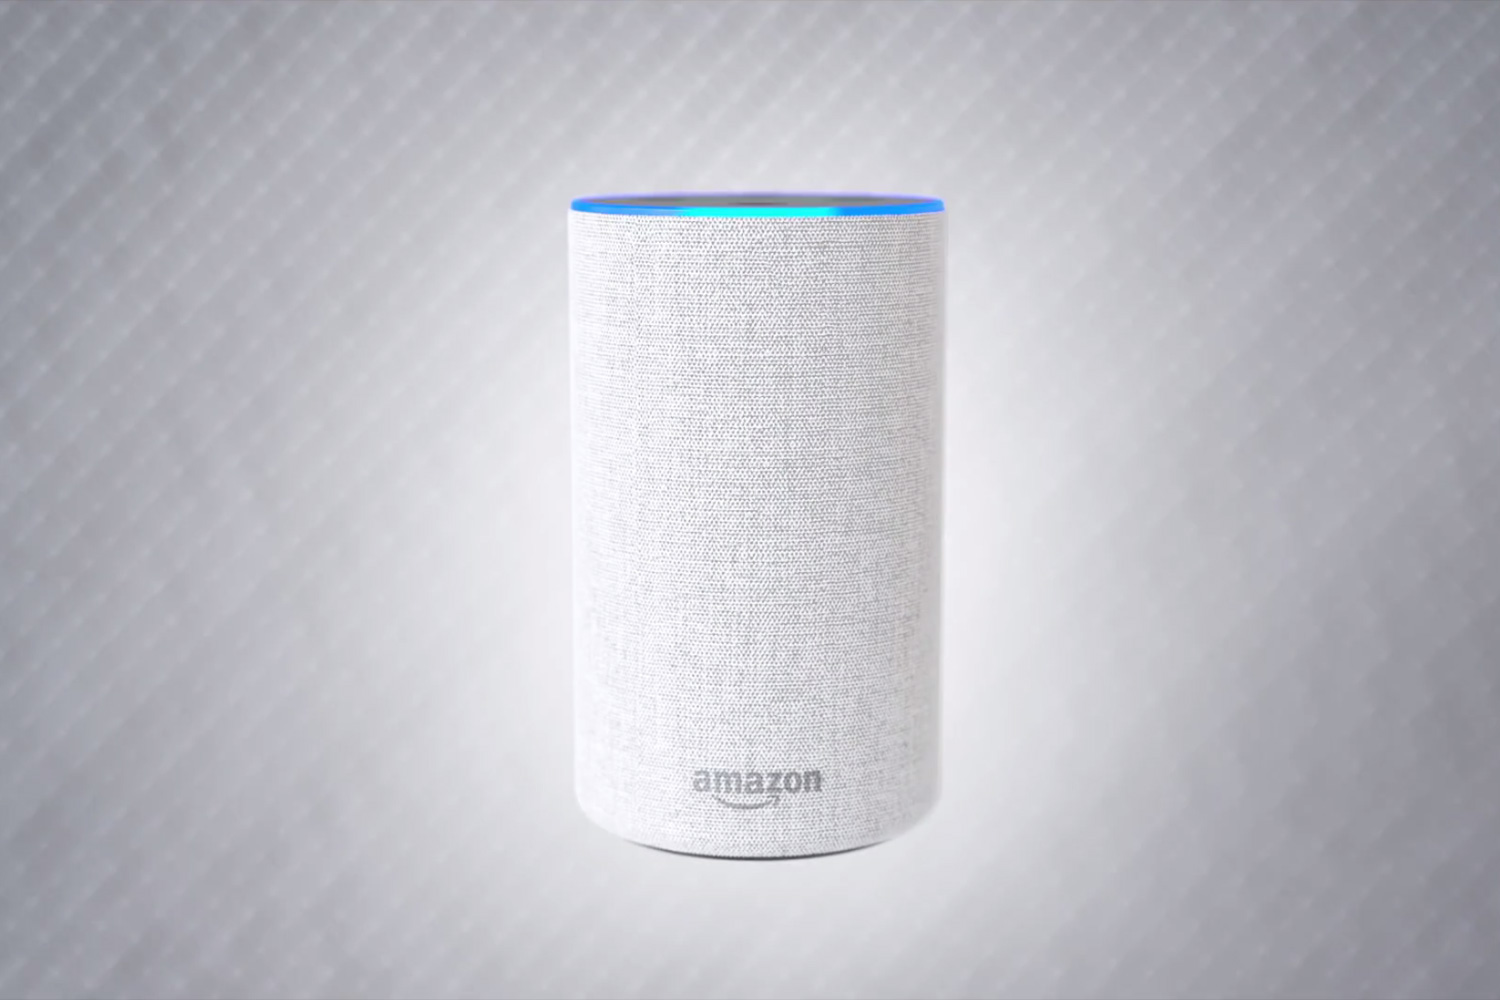 Amazon Echo vs Apple Homepod